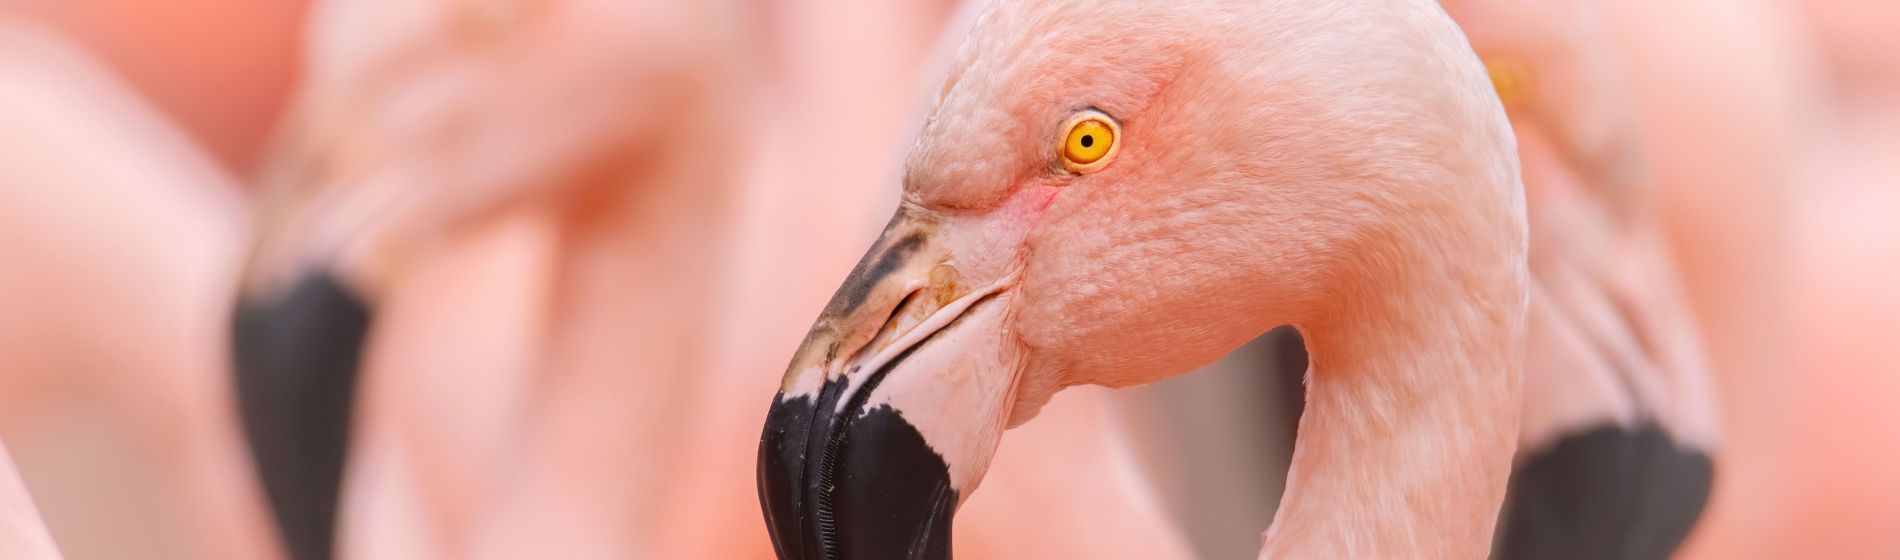 chilenischer_flamingo.jpg